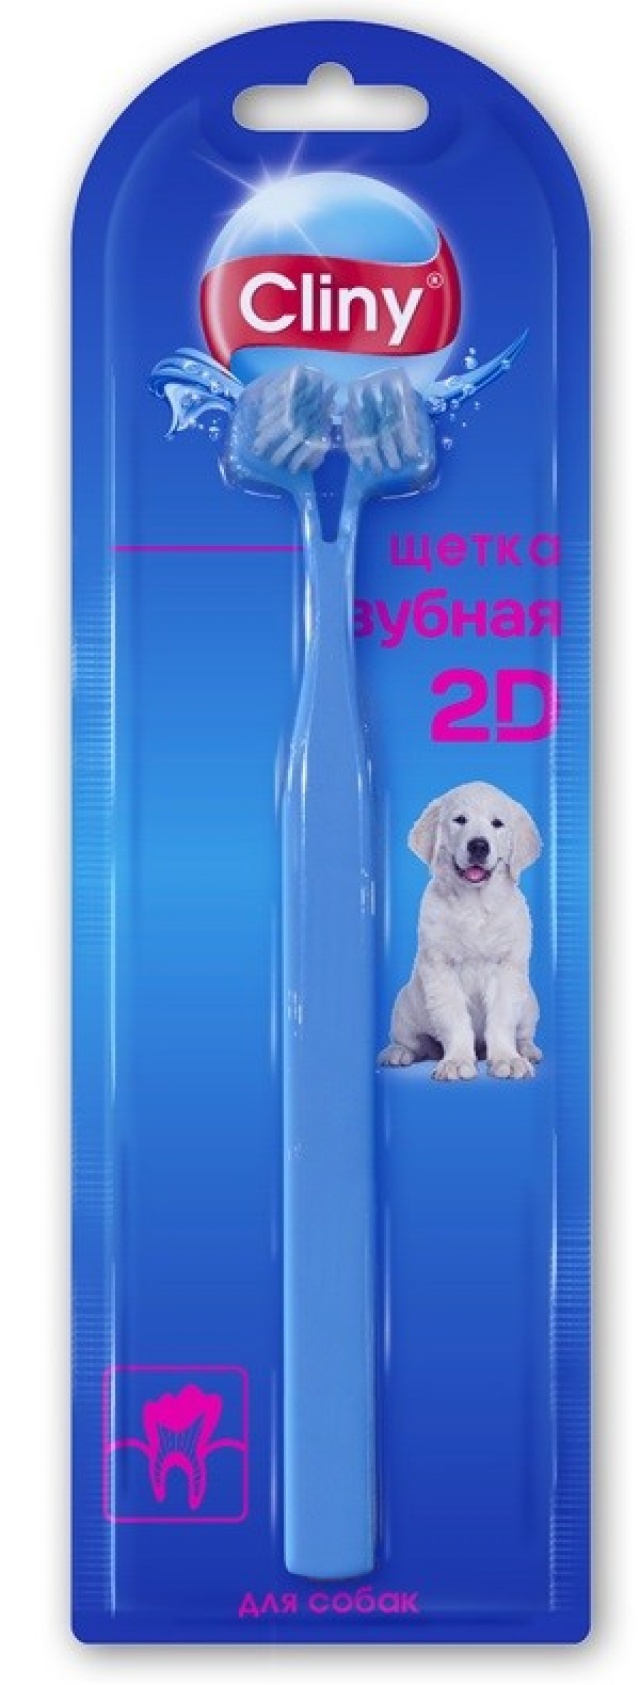 Зубная щетка для собак Cliny 2D, голубой, 22 см